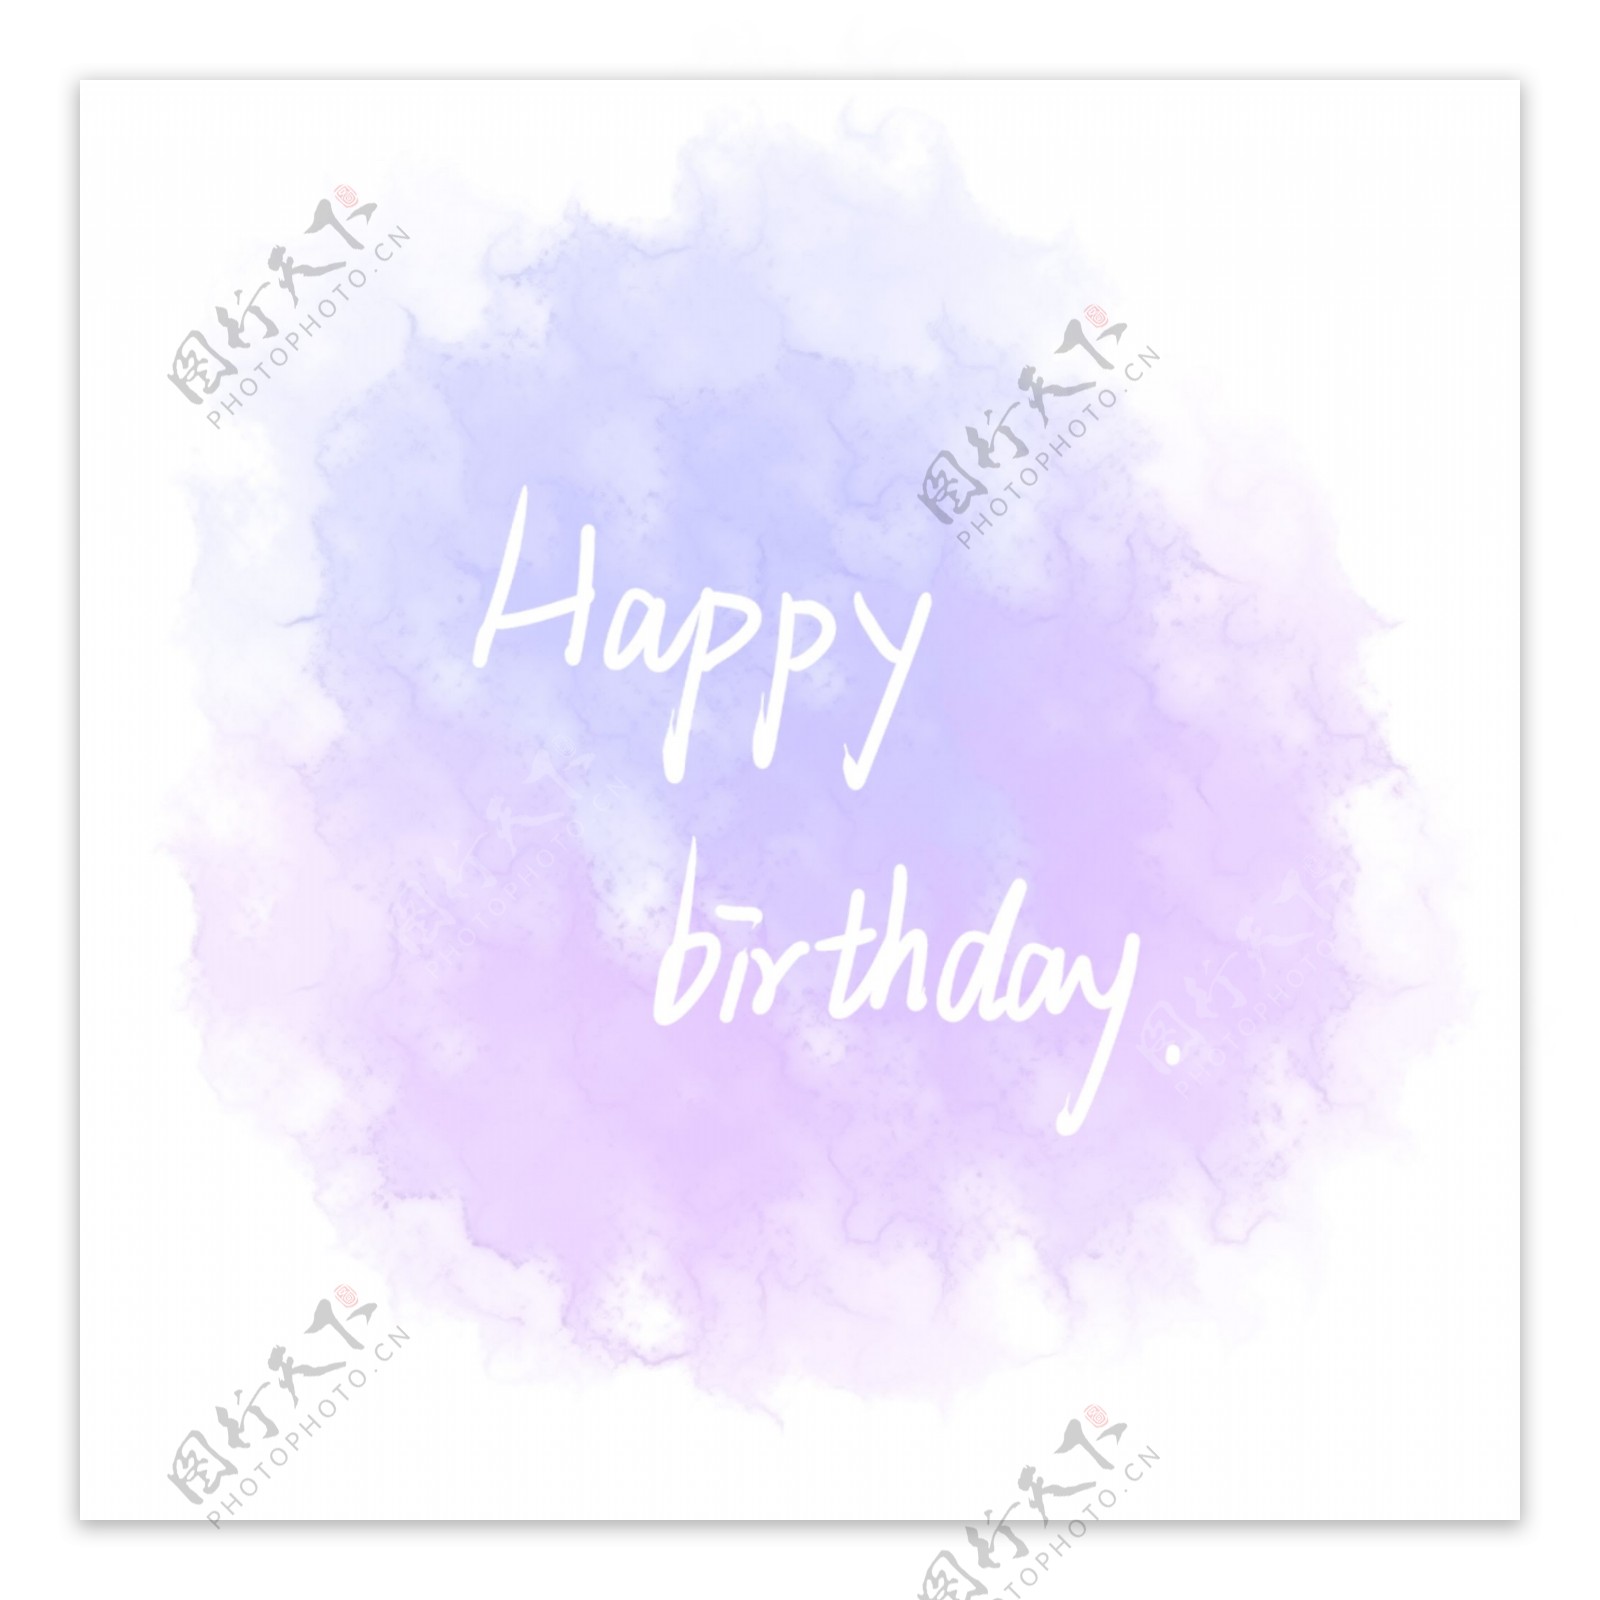 生日快乐水彩字母插图